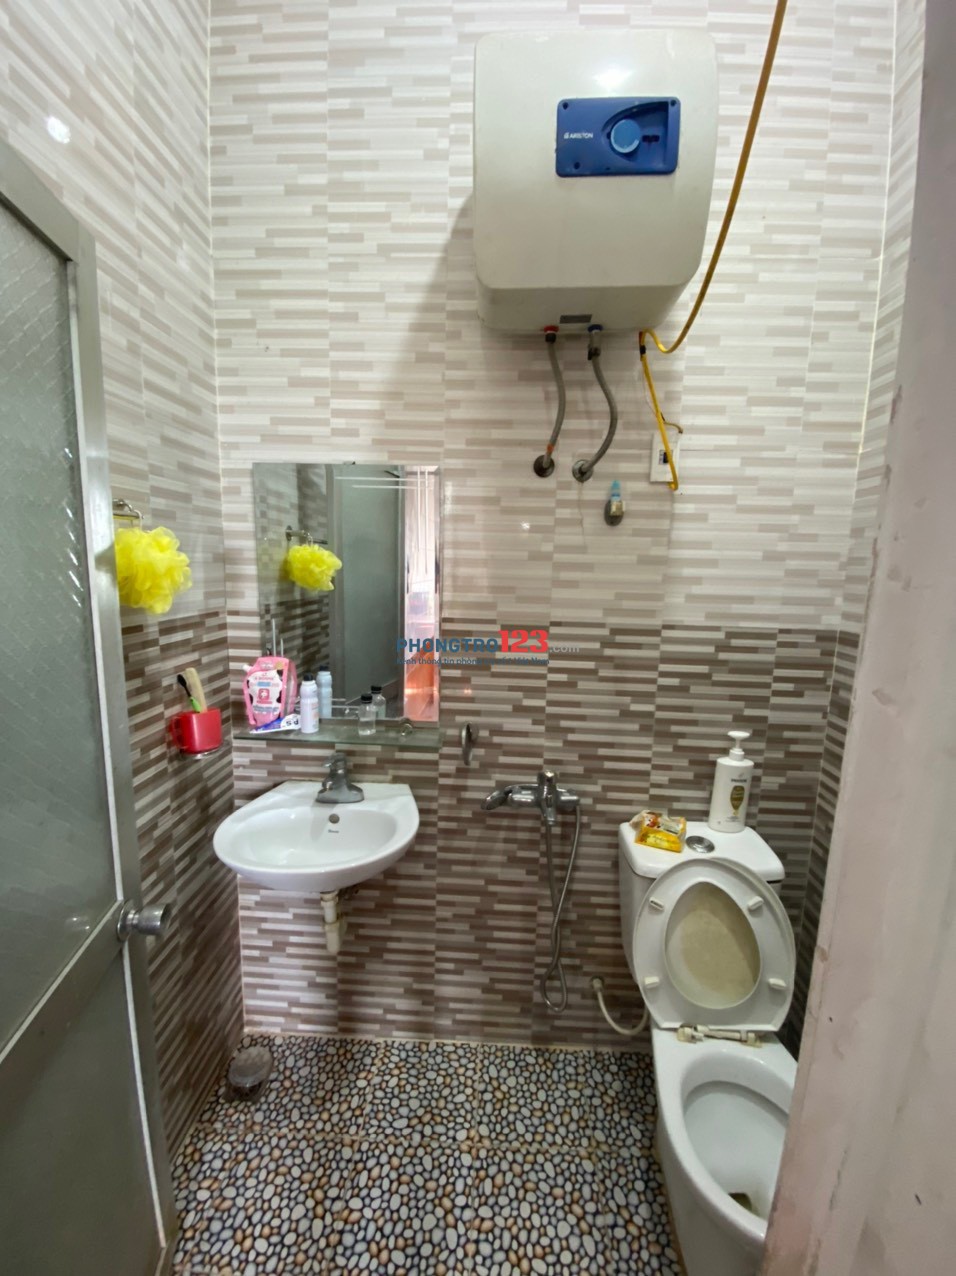 Chuyên cung cấp dịch vụ cho thuê phòng trọ - chung cư mini tại thành phố Vinh với 9 cơ sở